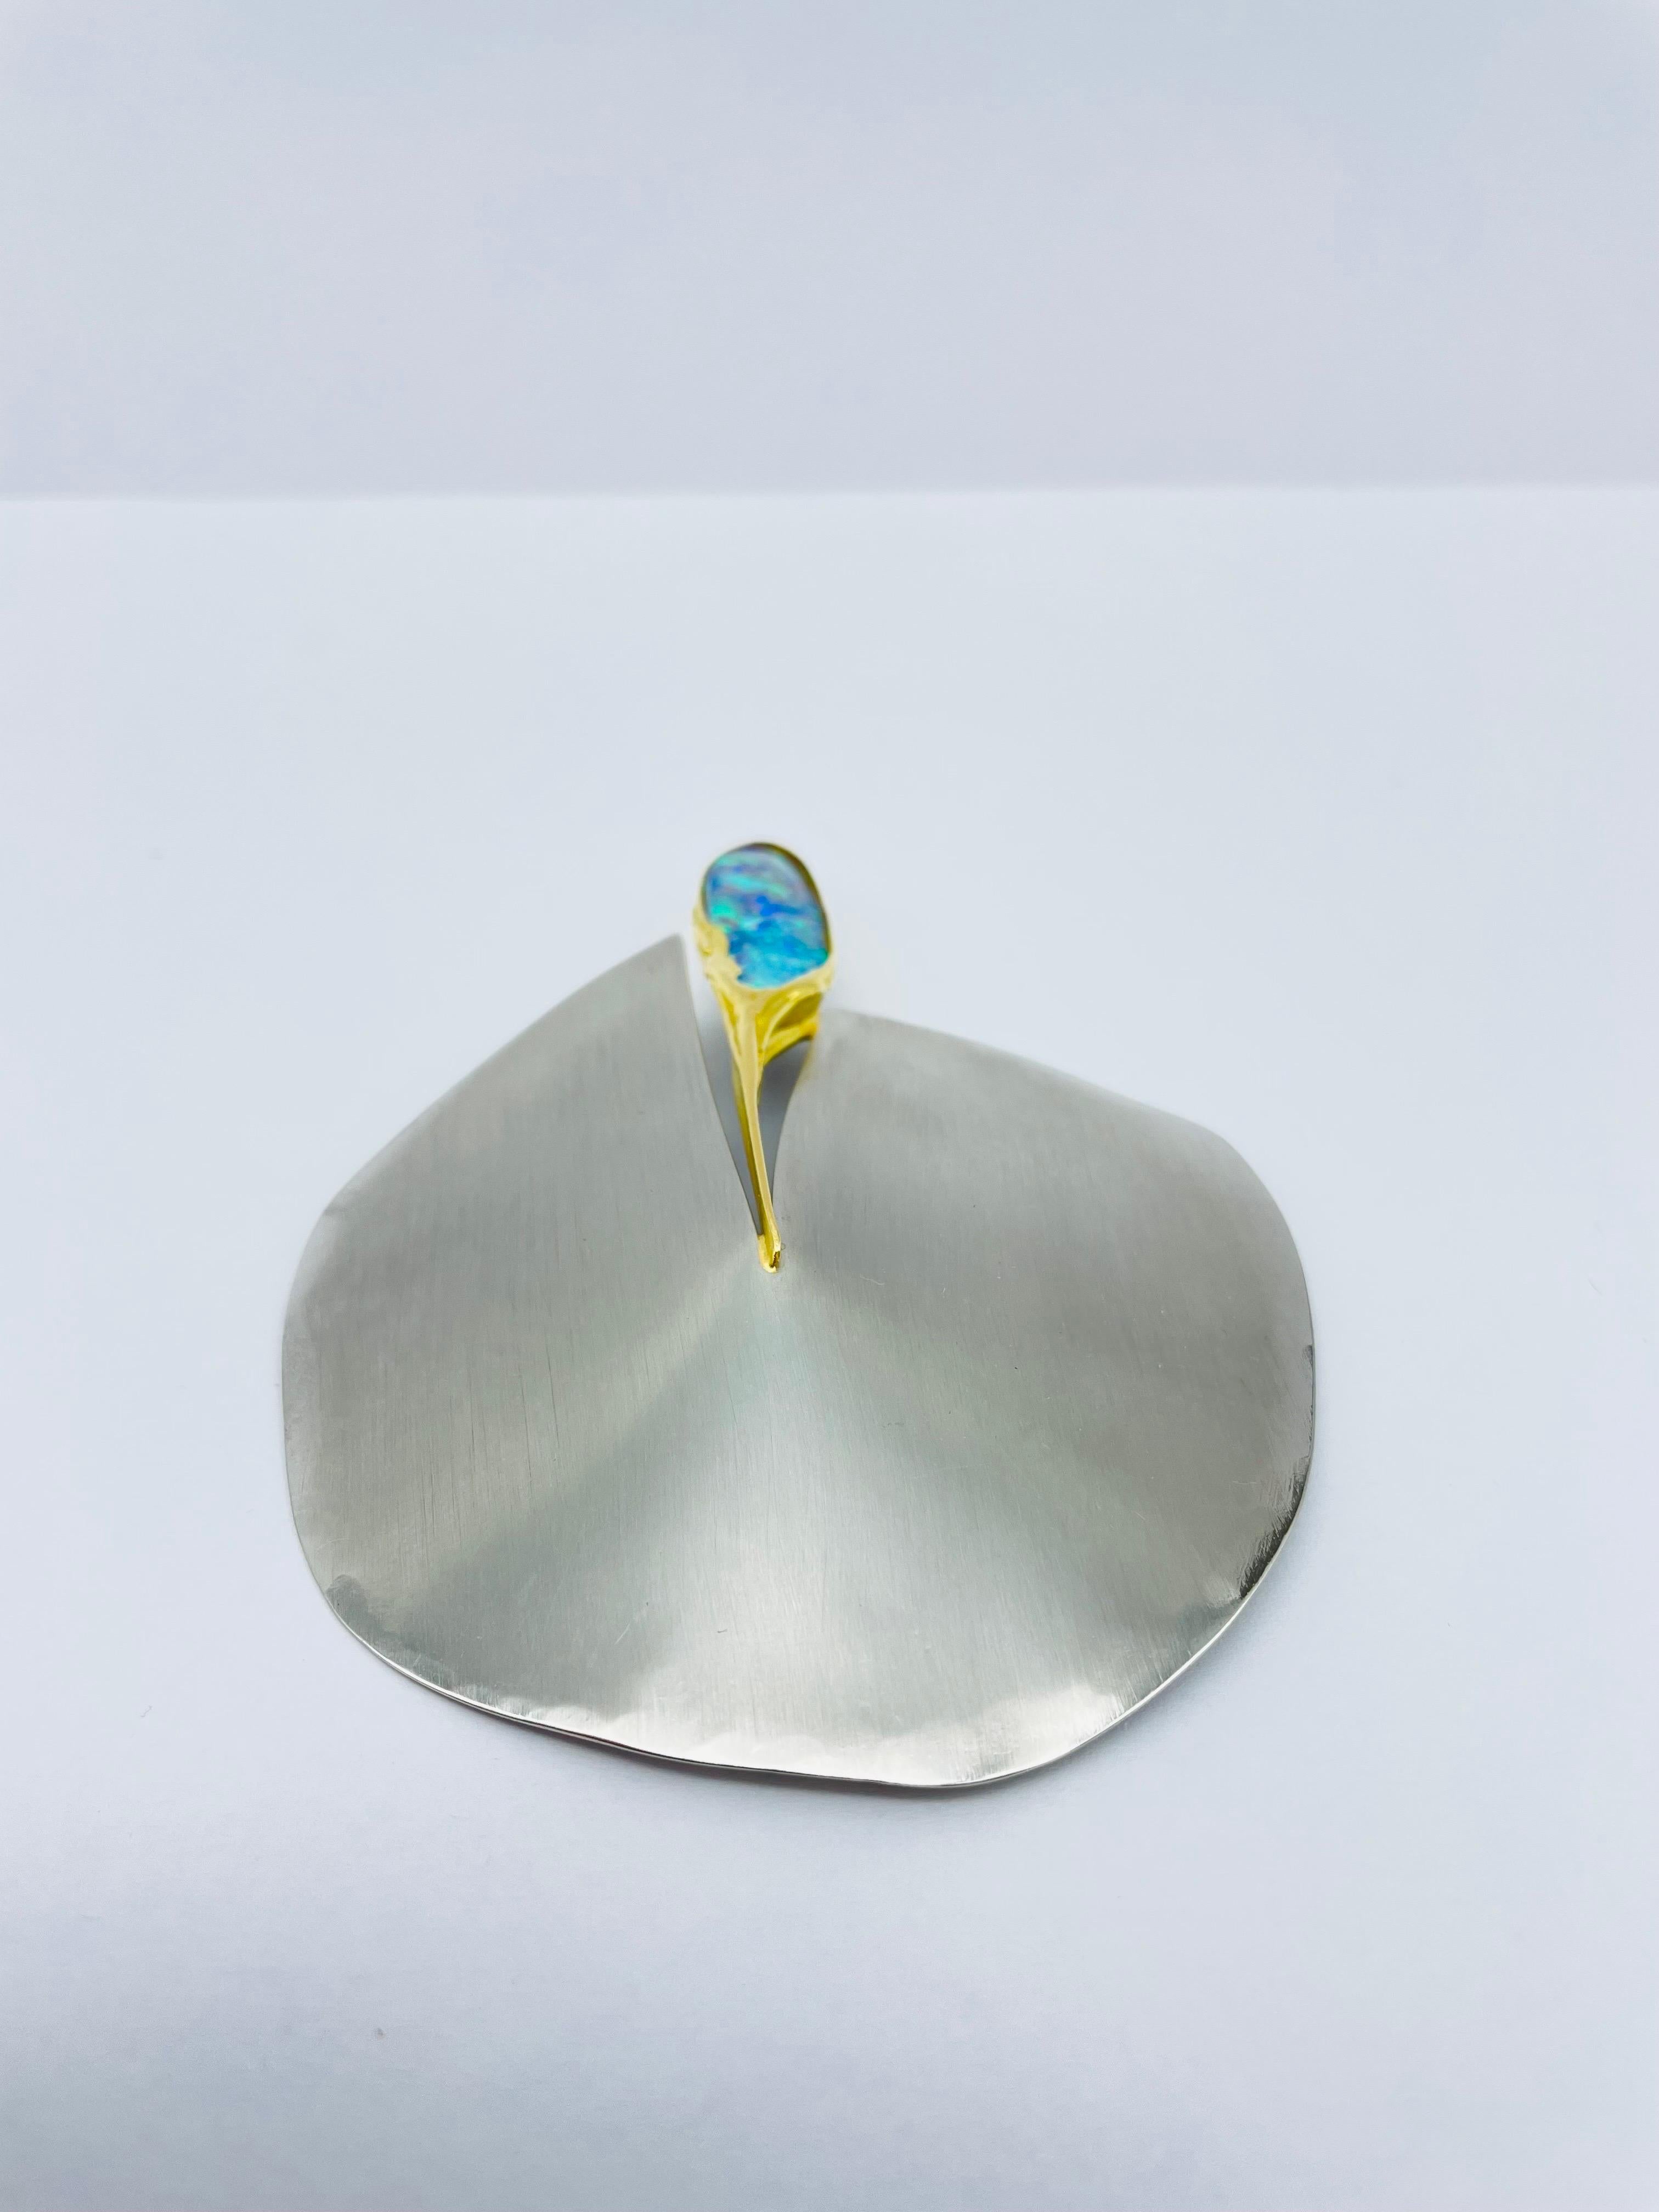 Oval Cut Bicolor Platinum/18k Gold Brooch-Pendant with Australian Opal, Unique For Sale